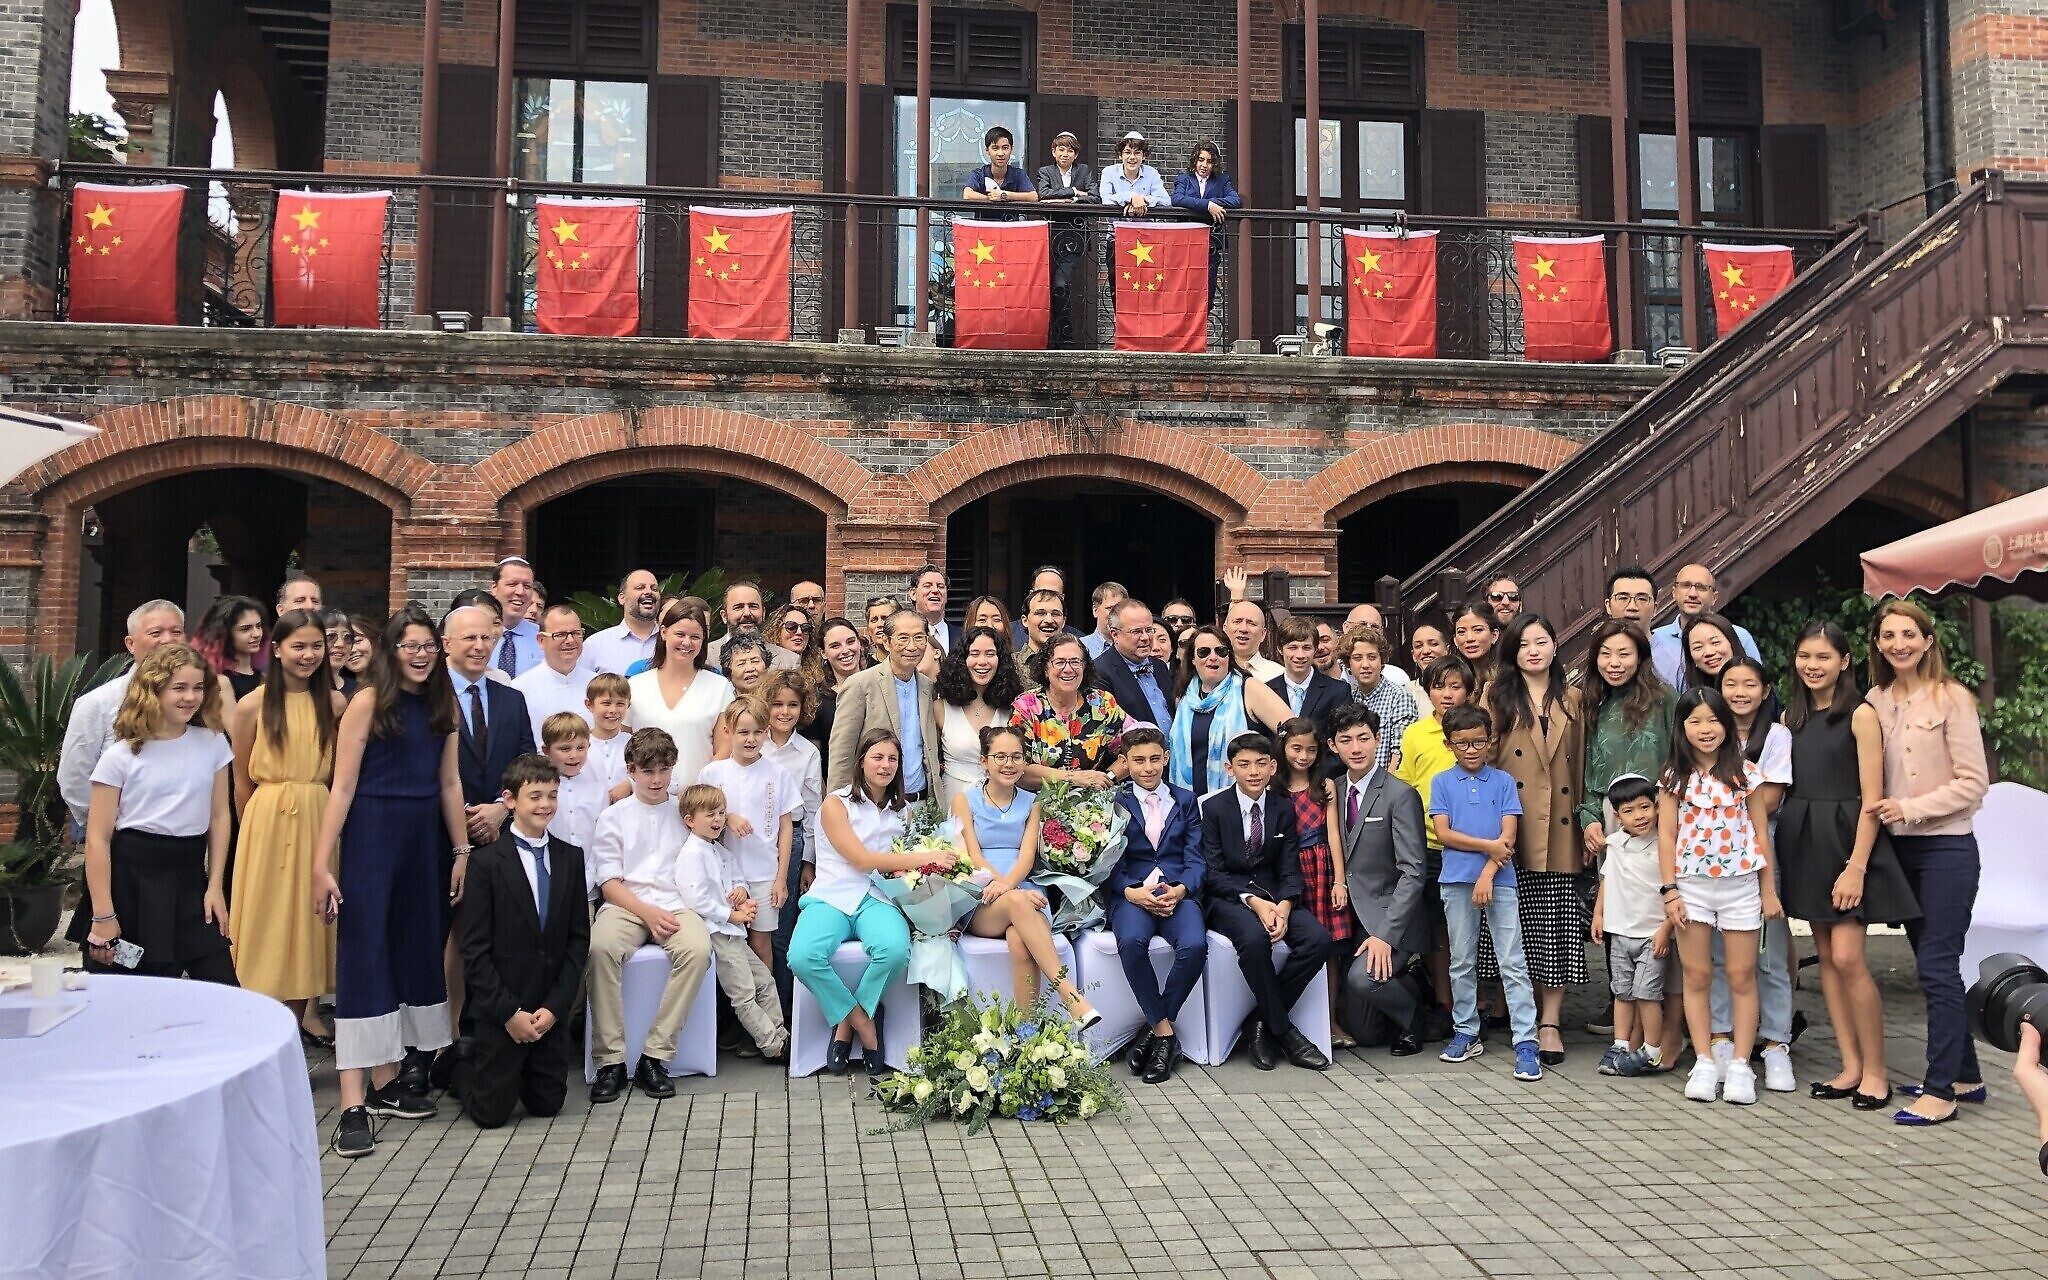  Des étudiants de Bar mitzvah et la communauté juive de Shanghai célébrant à la synagogue Ohel Moshe, aujourd'hui musée des réfugiés juifs de Shanghai, en octobre 2019. (Crédit : Hanna Minsky/ Kehilat Shanghai)